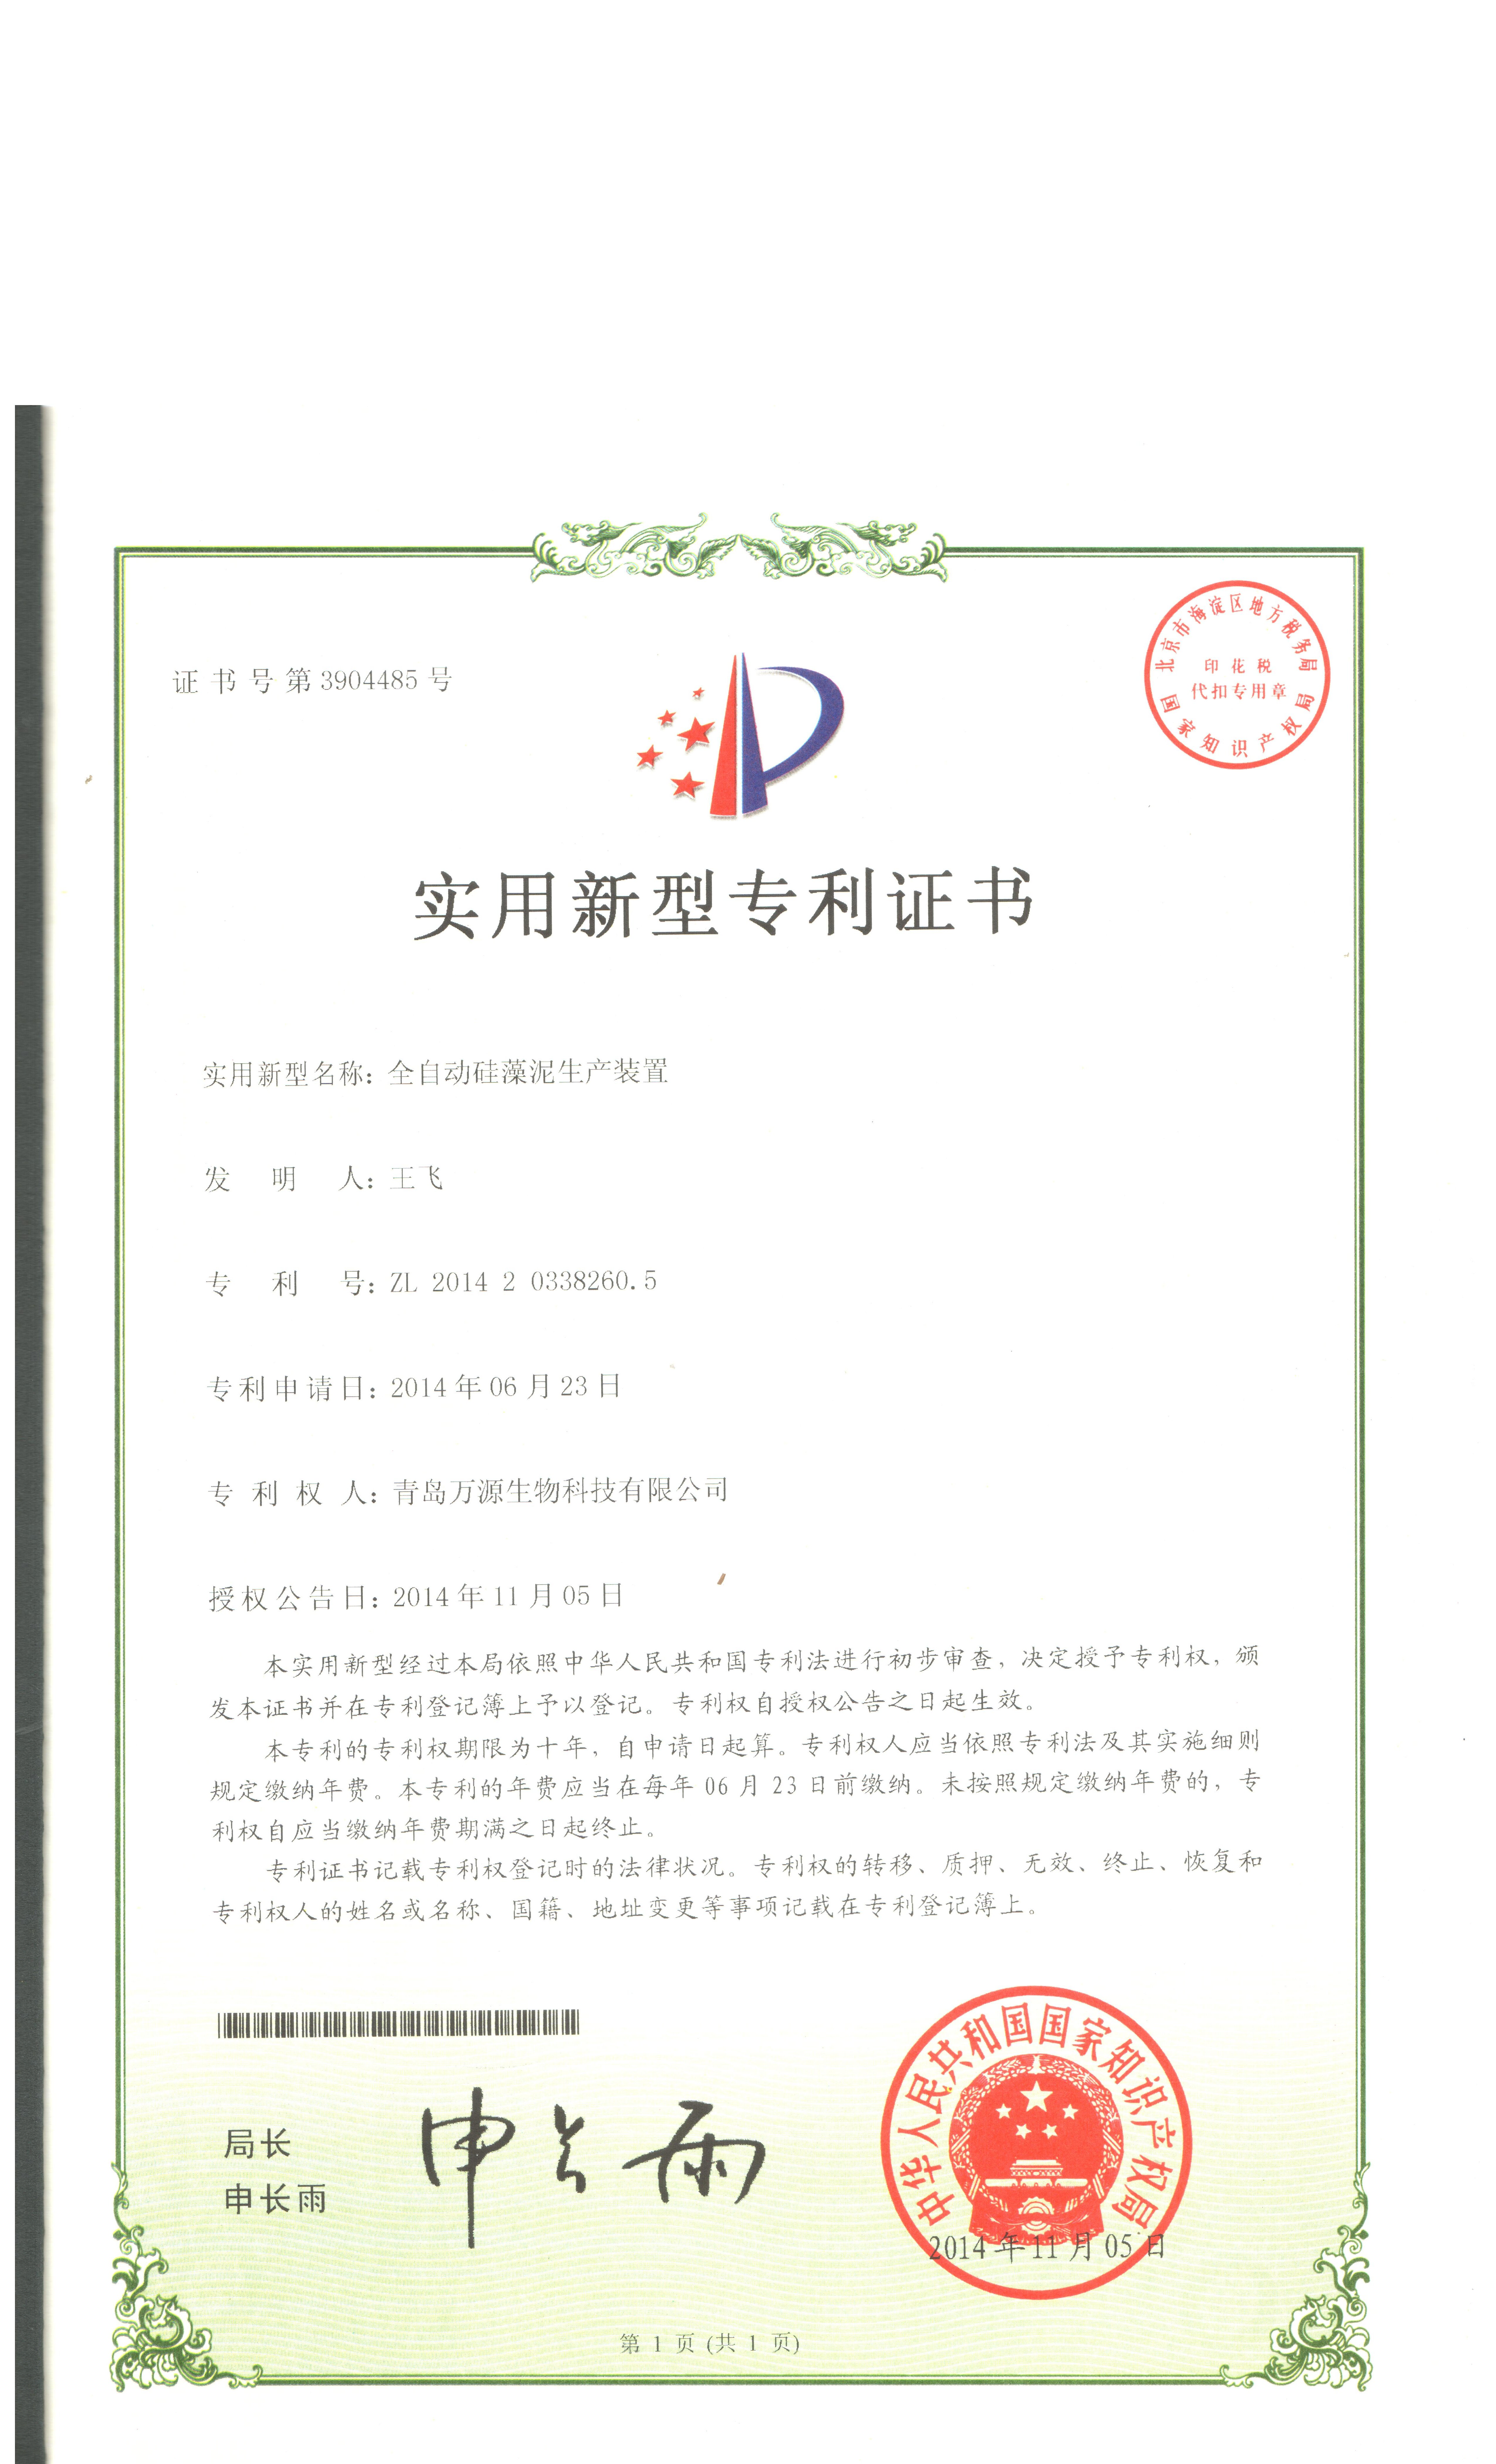 2014年11月05日獲得專利證書全自動硅藻泥生產裝置